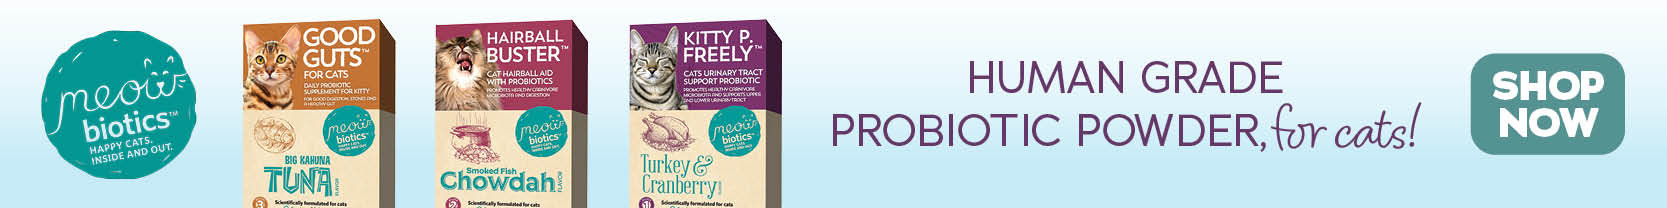 Meowbiotics - Human grade probiotic powder for cats!